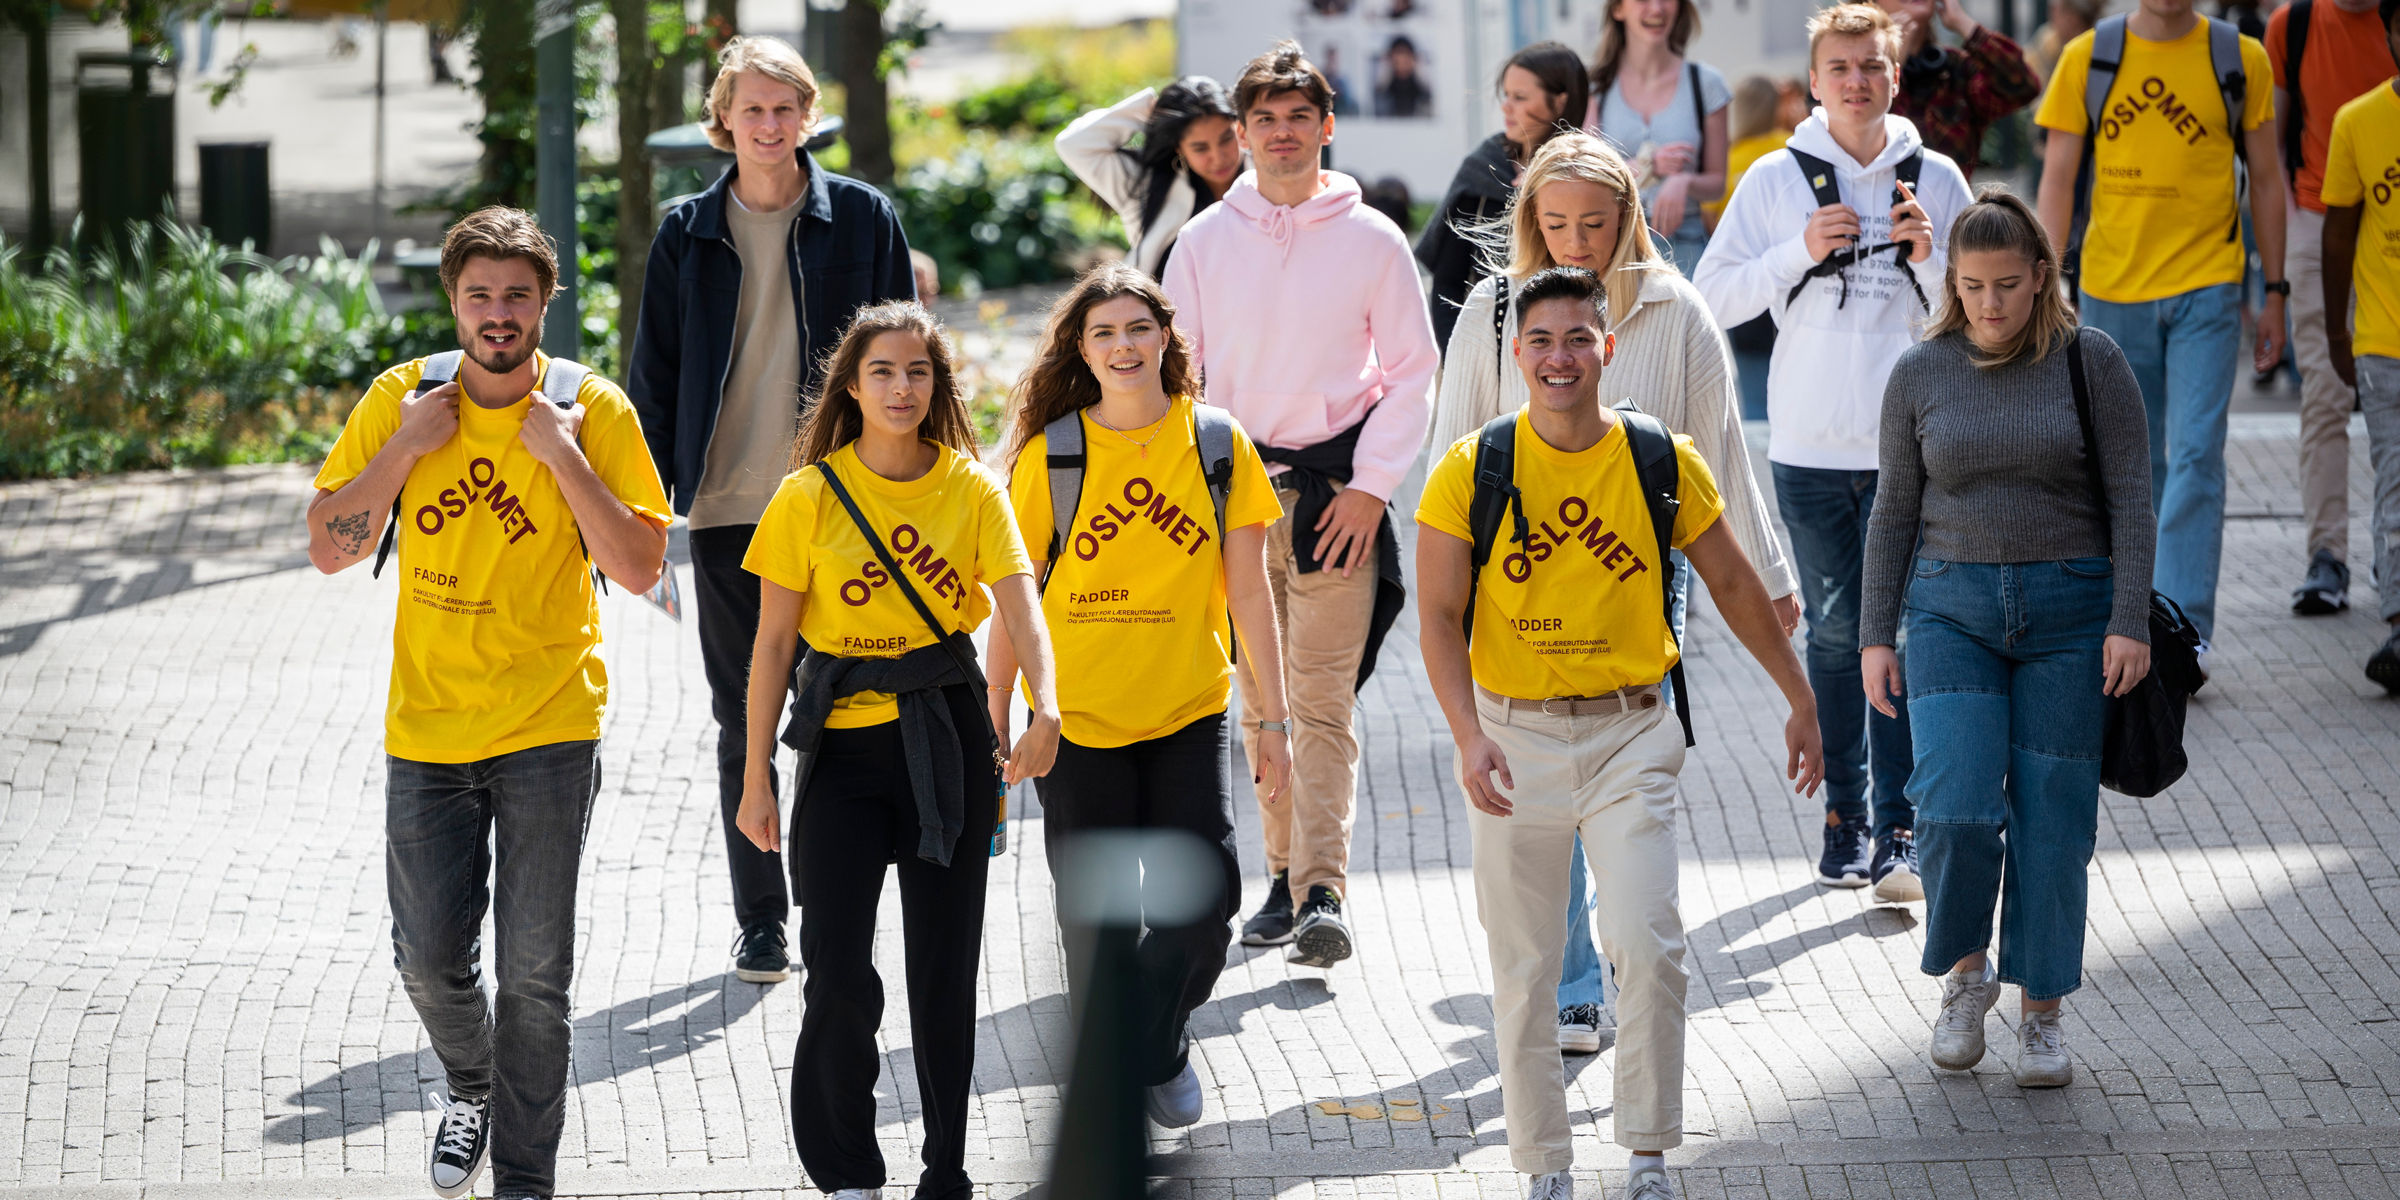 En gruppe gående unge mennesker kledd i gule t-skjorter og vanlige klær.